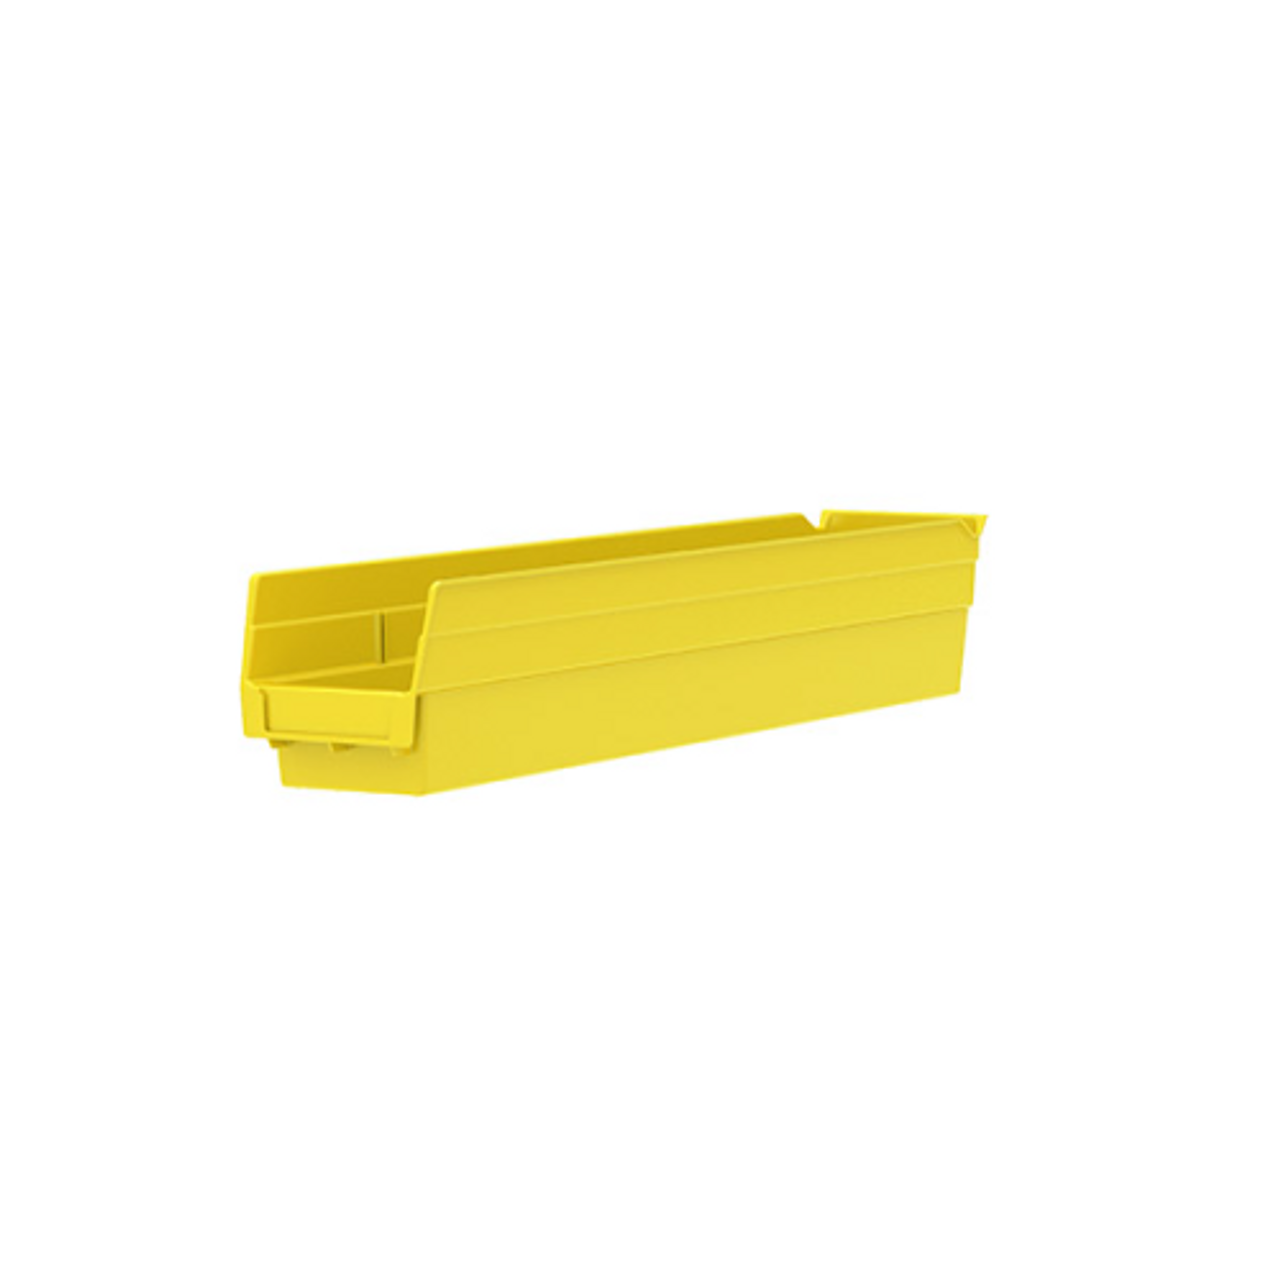 30124 23 5/8x4, 1/8x4 Yellow Shelf